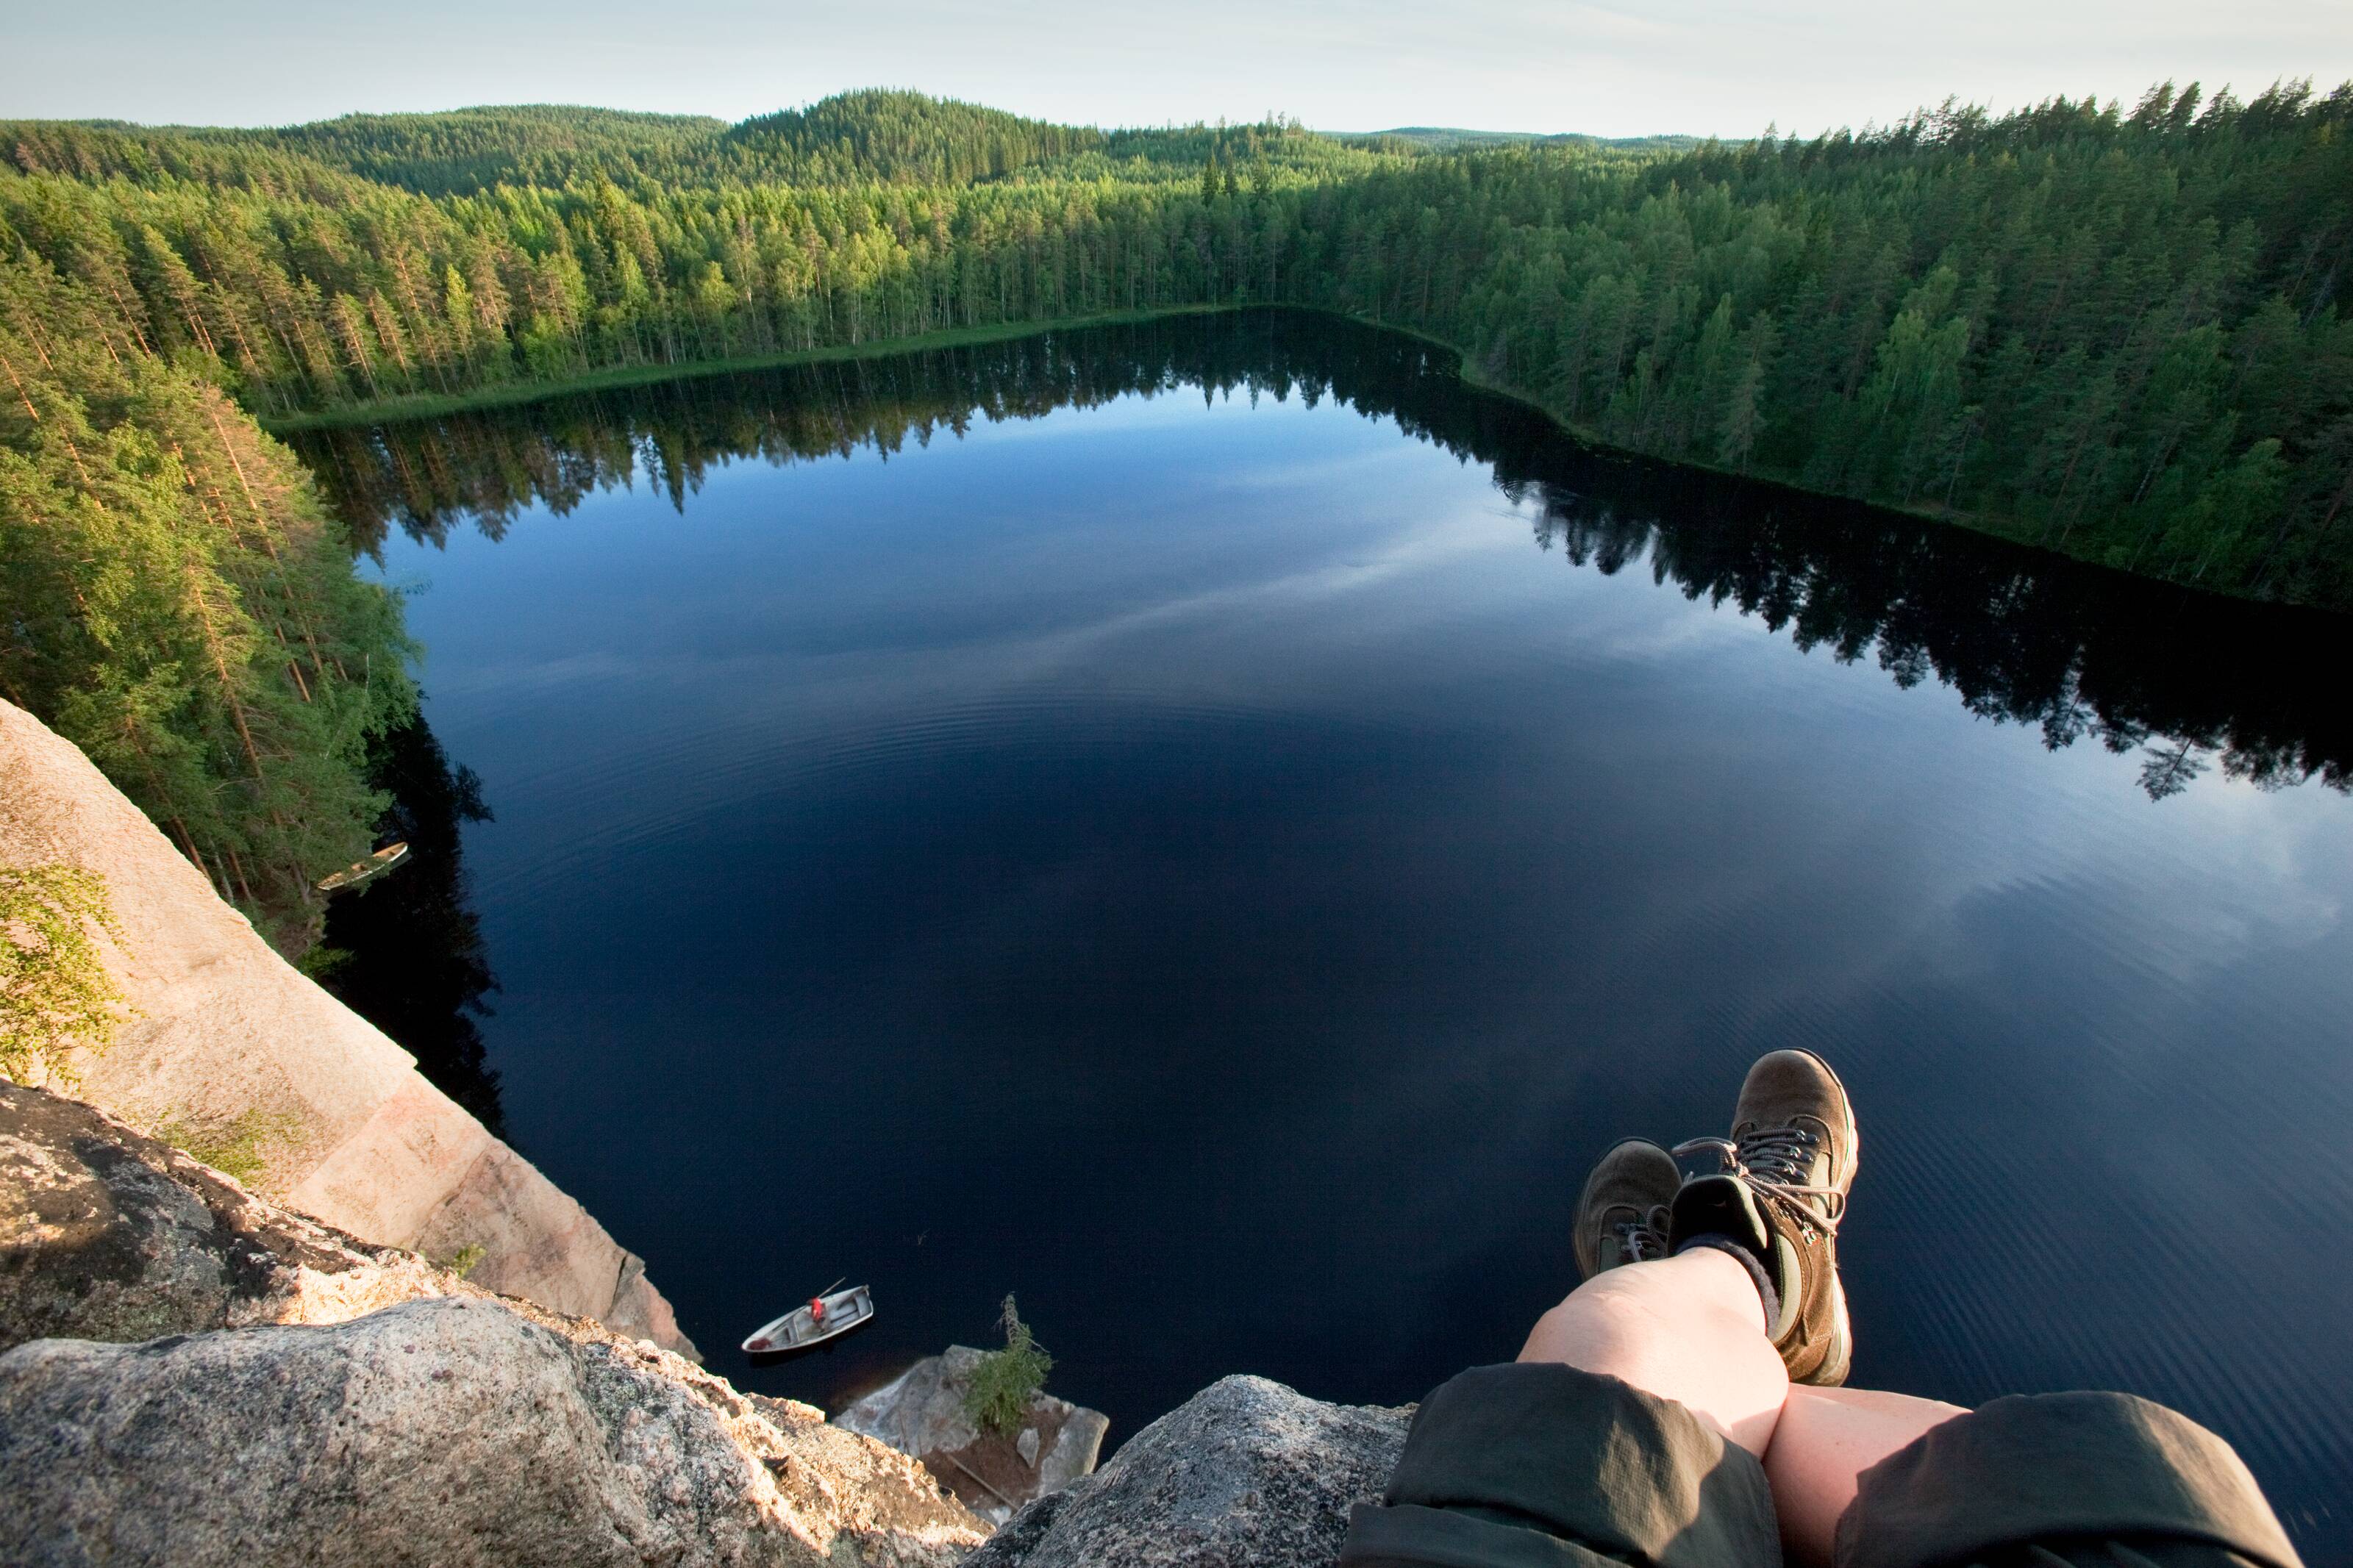 Landschaftsbild mit Blick auf einen rechteckigen See in einem Wald